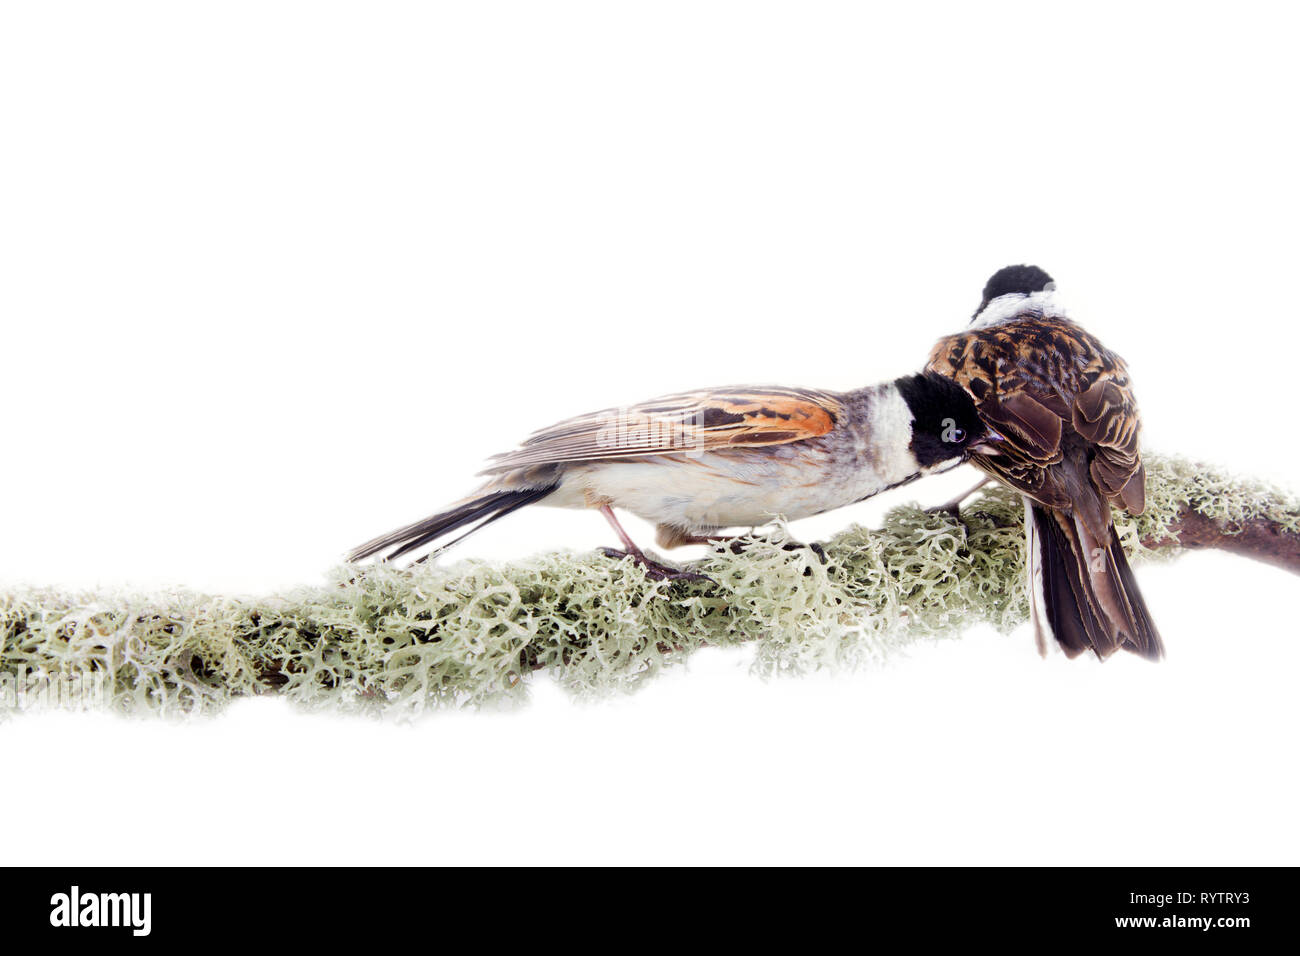 In contrasto due uccelli sul ramo coperti con delicati licheni. Nello stile della pittura giapponese a la Kitagawa Utamaro animalismo sezione. I maschi Bunt Reed Foto Stock